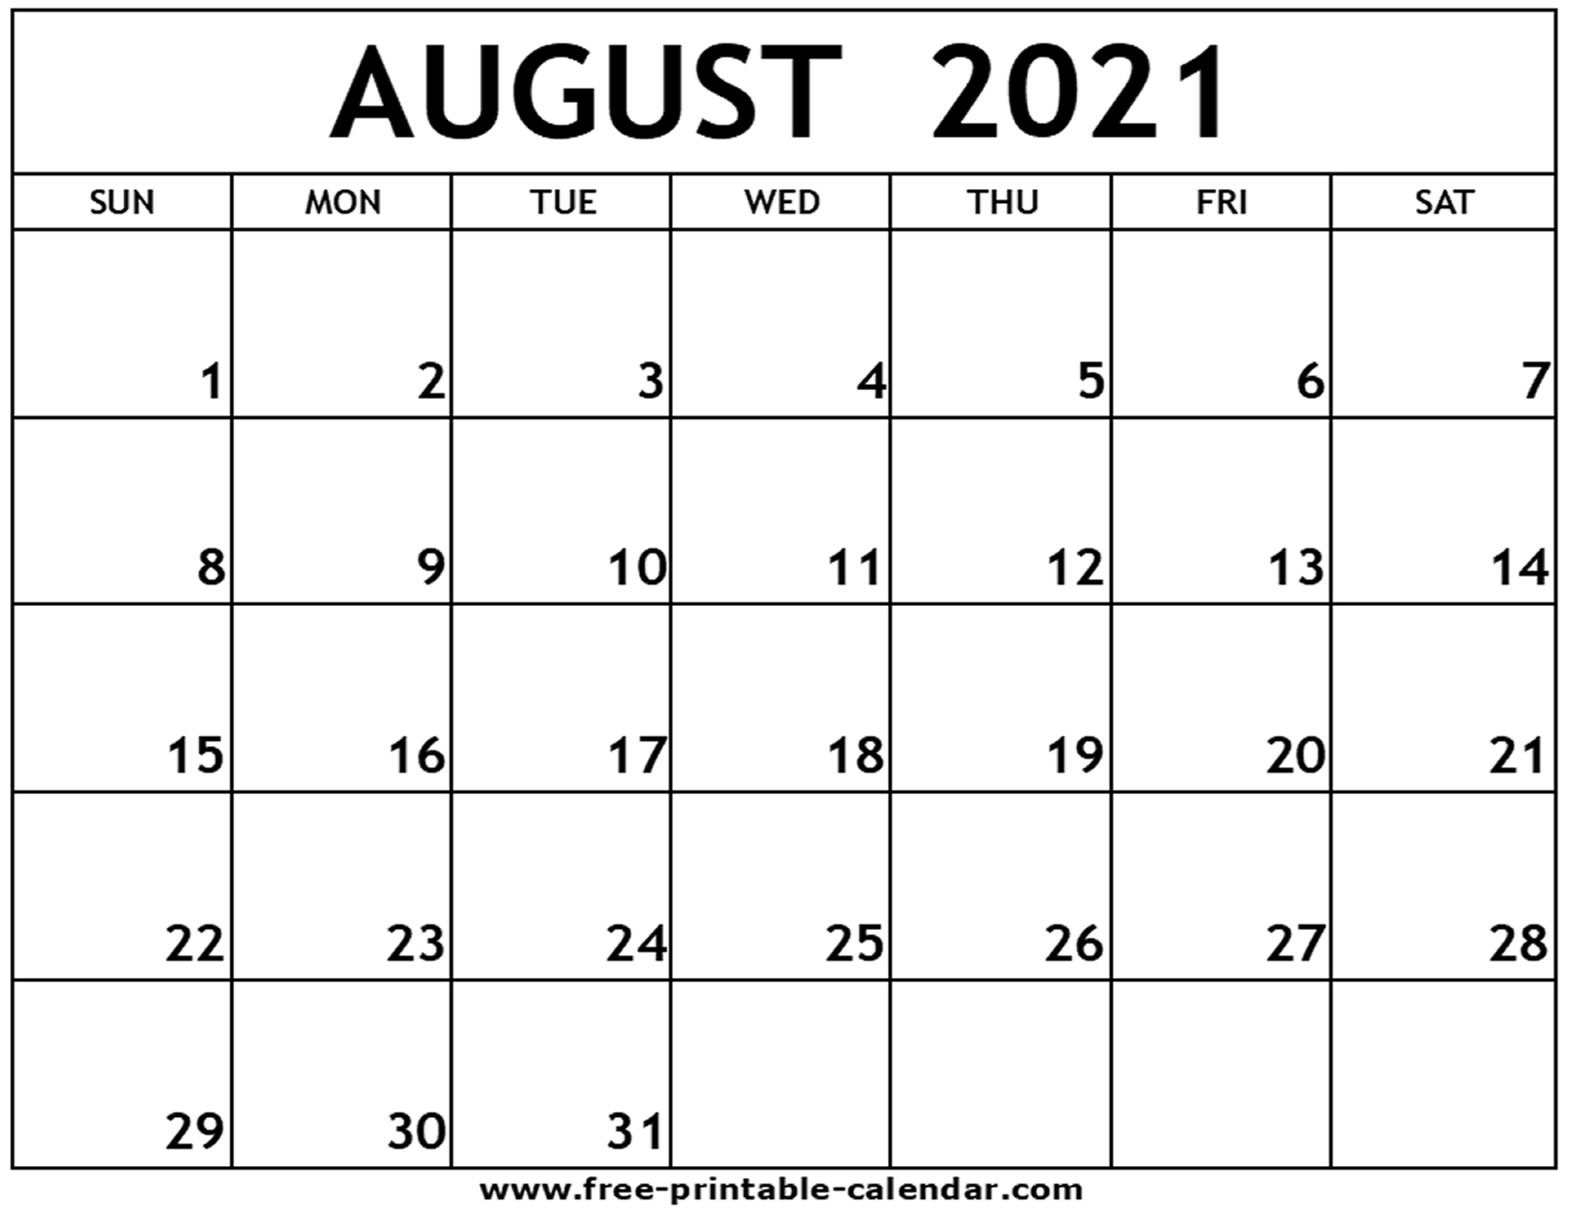 Collect August 2021 Calendar